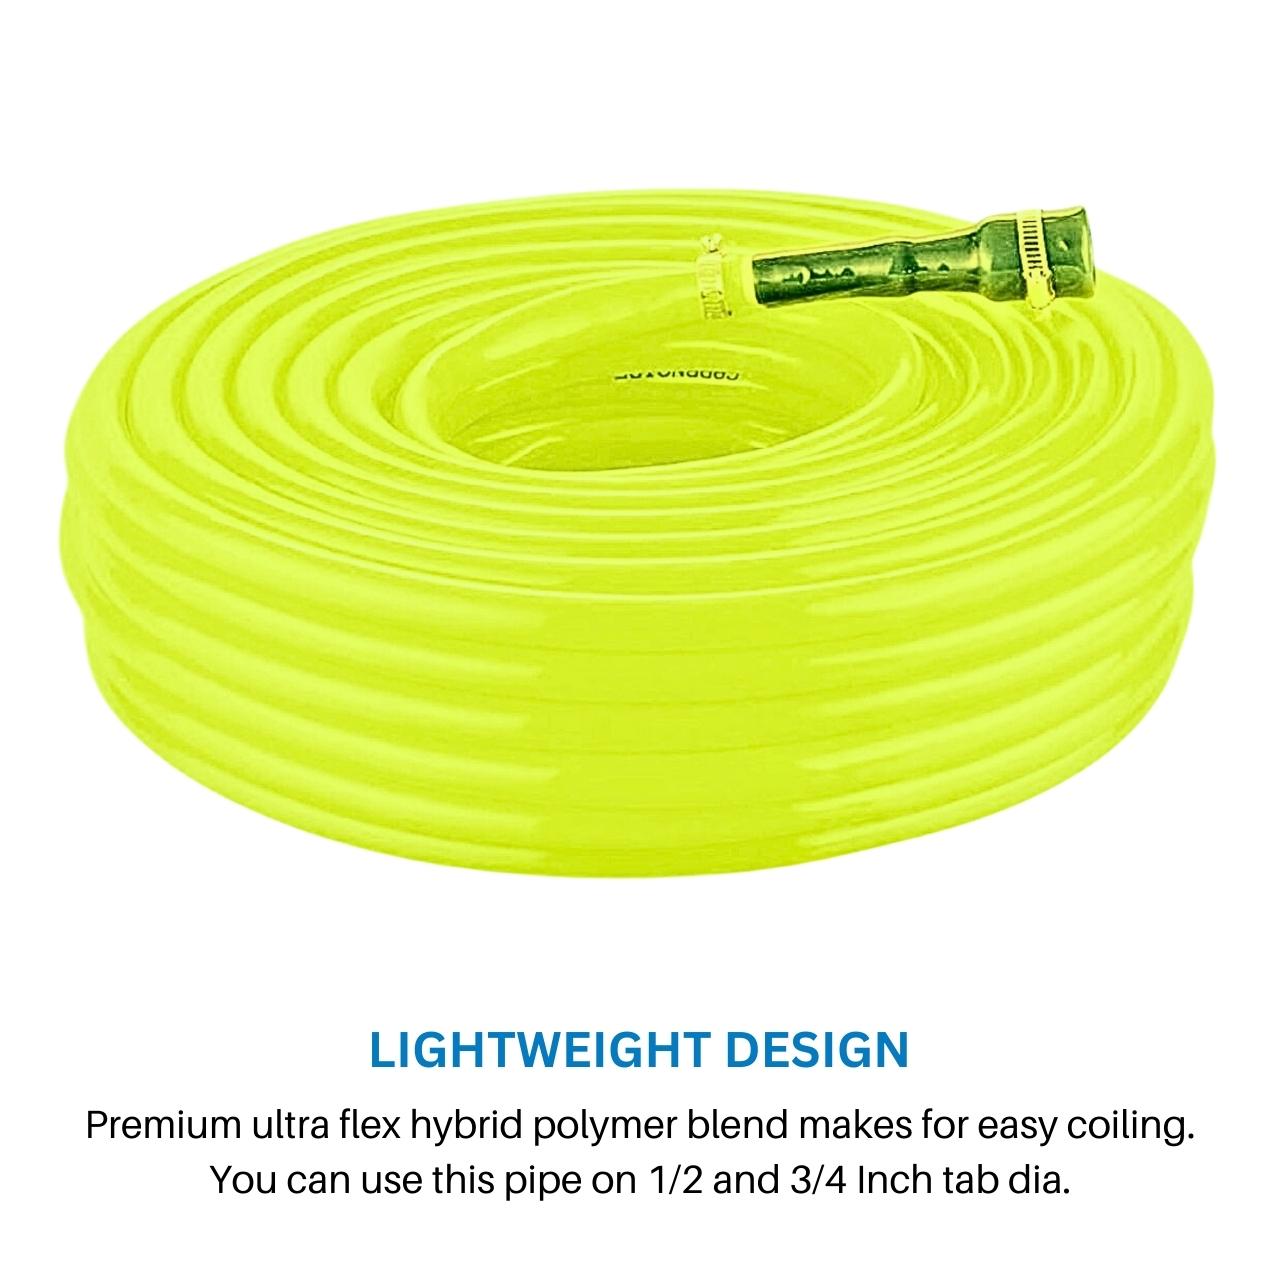 Lemon Yellow Flexible PVC Water Pipe